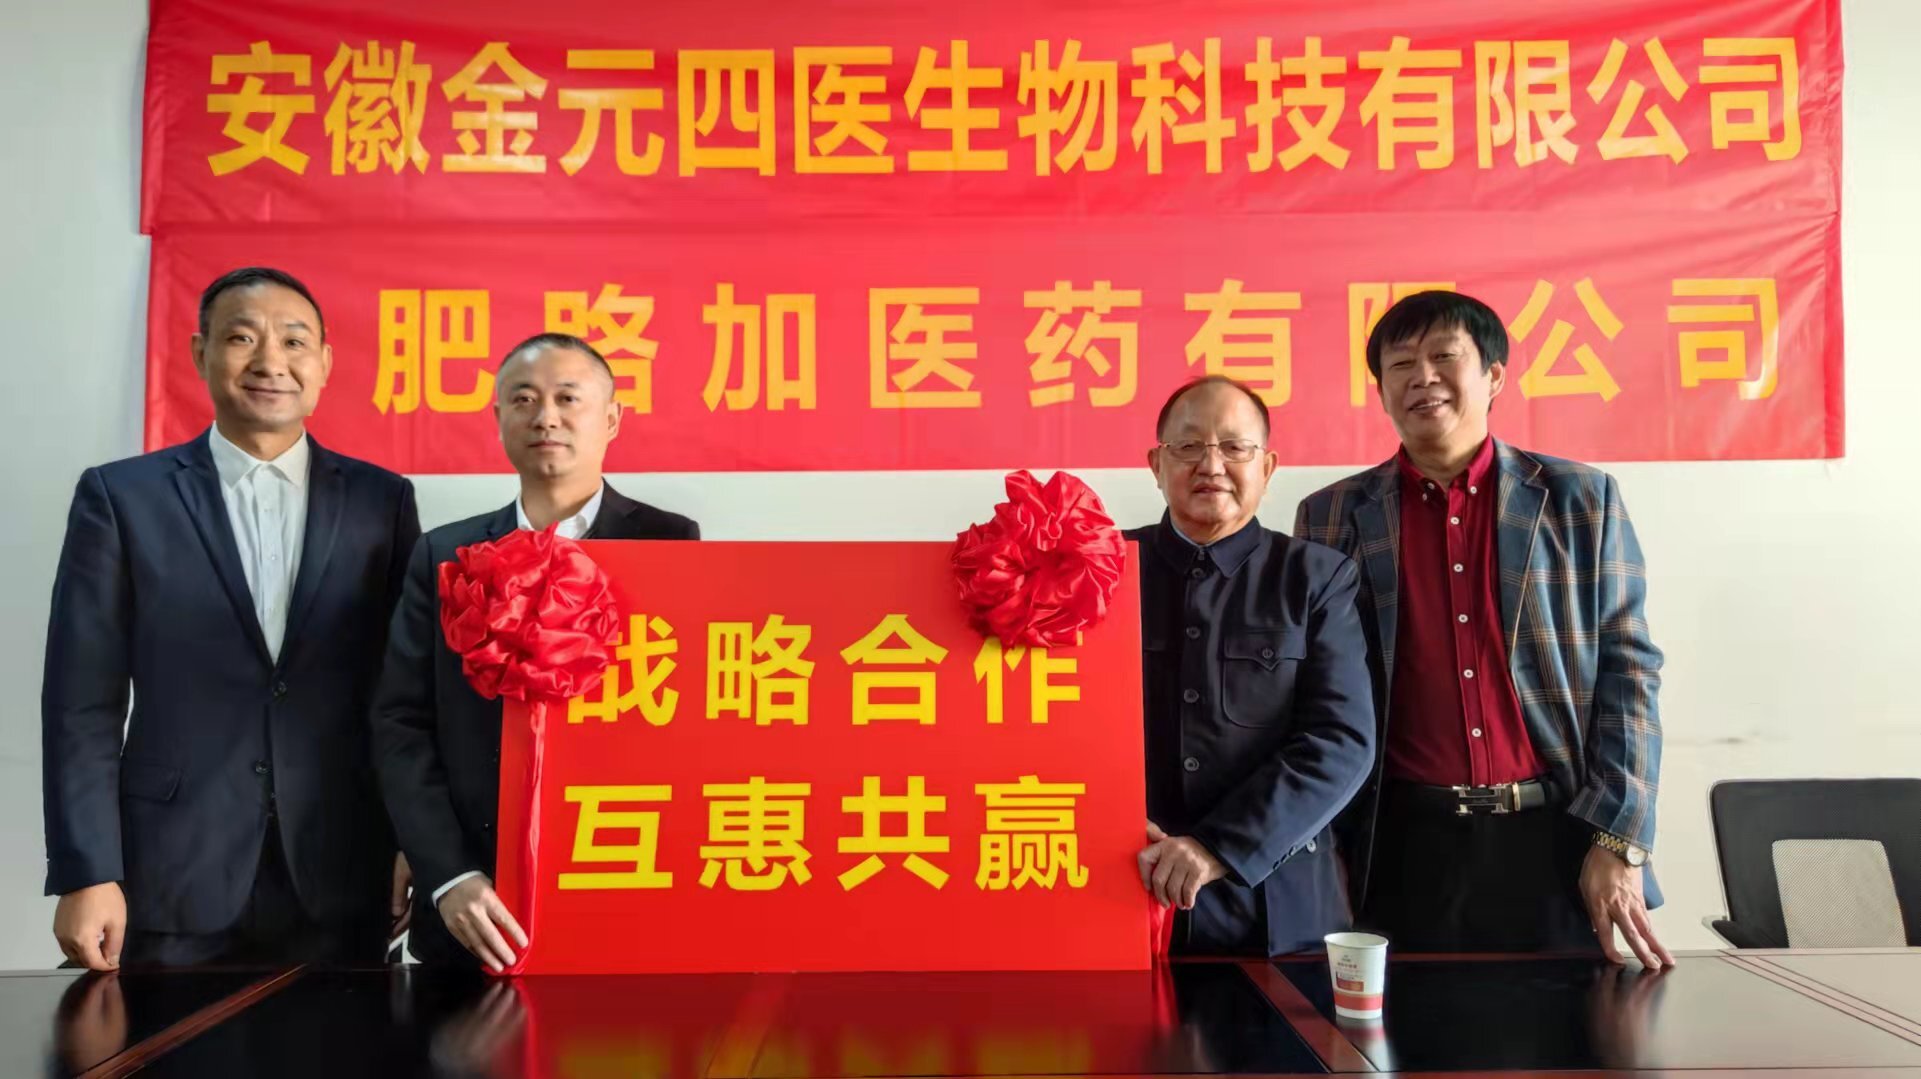 安徽金元四医生物科技公司与合肥路加医药公司 签订战略合作协议